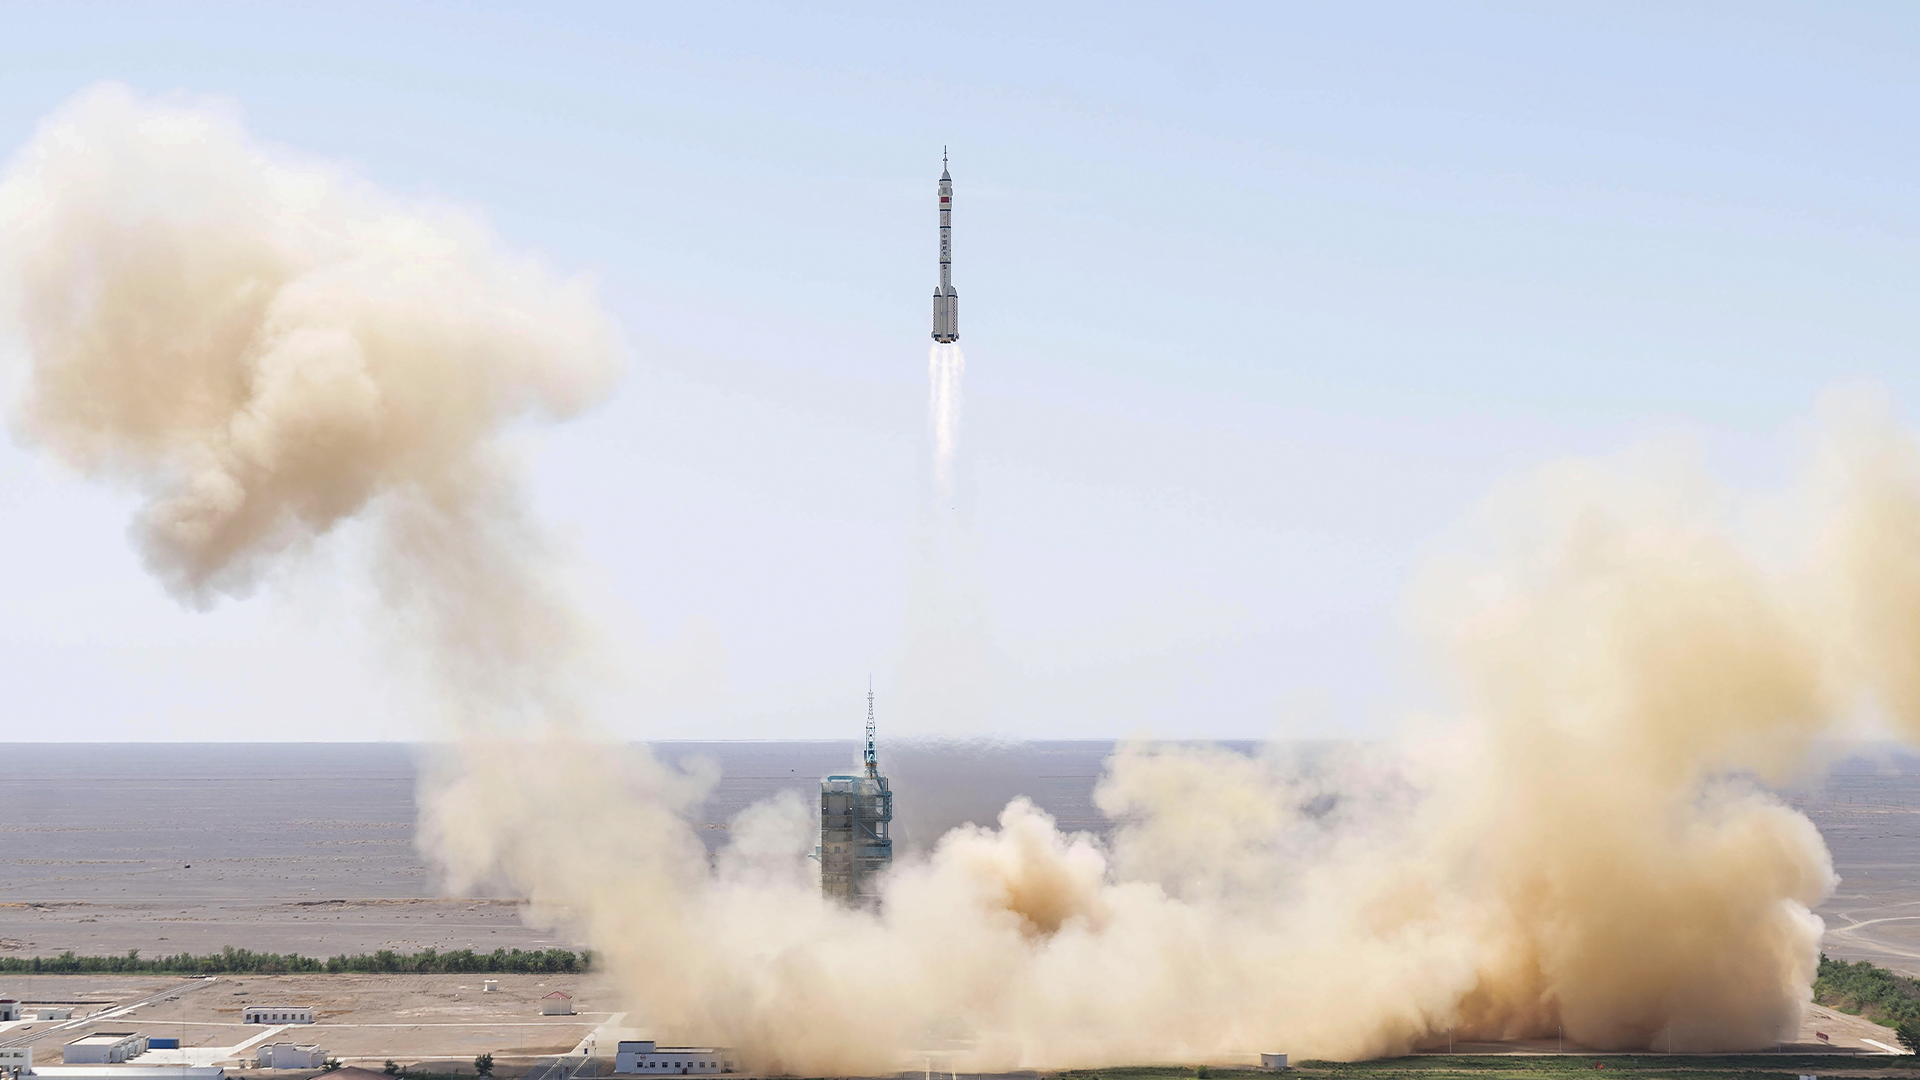 La navette spatiale a décollé du Centre de lancement de satellites Jiuquan situé en bordure du désert de Gobi Desert à 10:44 a.m. (heure locale) grâce à la puissance déployée par la fusée Long March 2F.